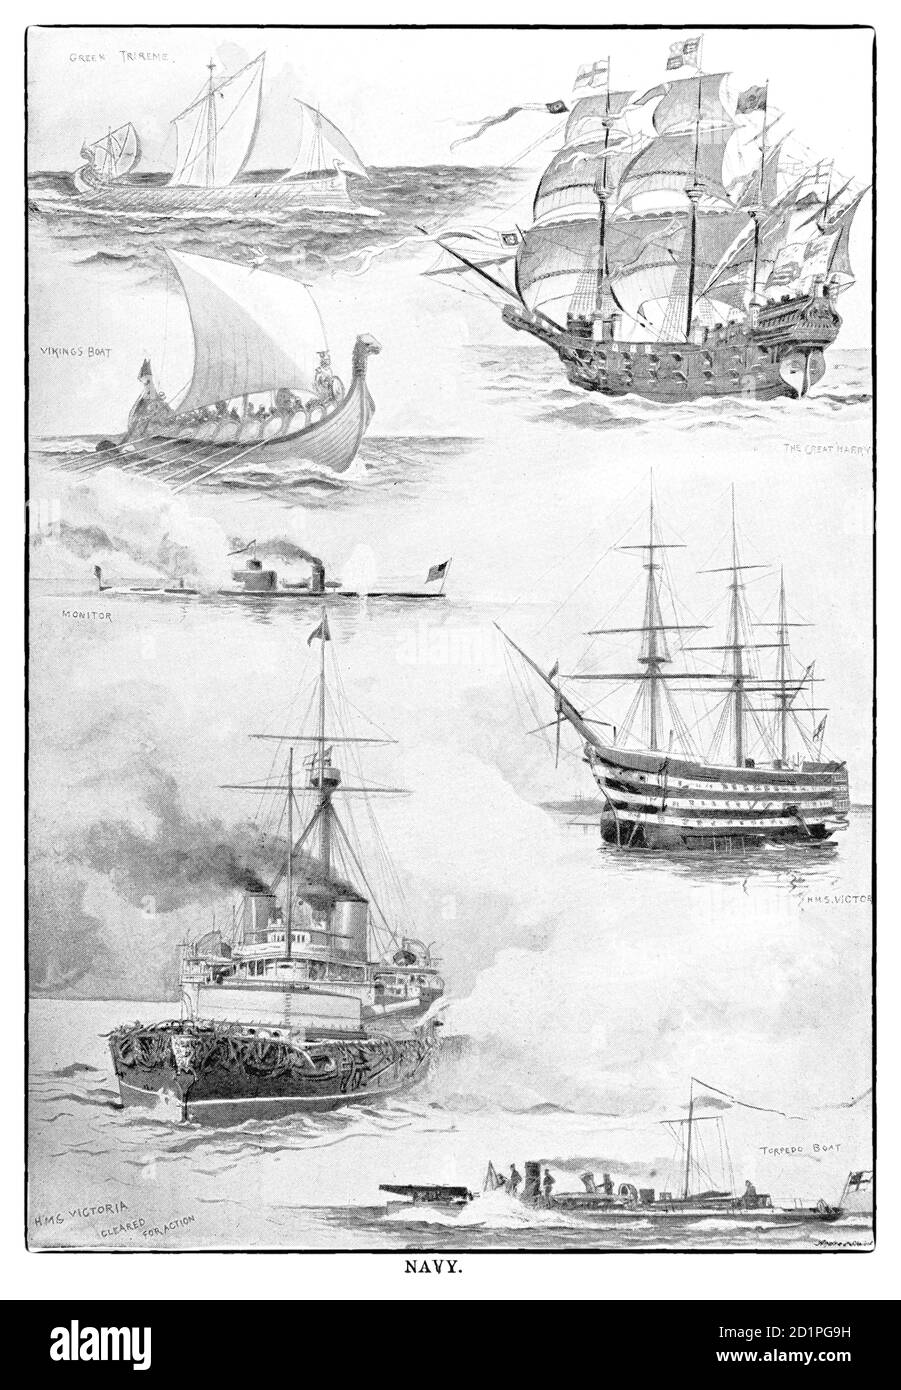 Eine Karte aus dem späten 19. Jahrhundert, die verschiedene Seeschiffe von griechischen Triremen ab 500 v. Chr. bis hin zu eisengedeckten Schiffen des späten 19. Jahrhunderts zeigt. Stockfoto